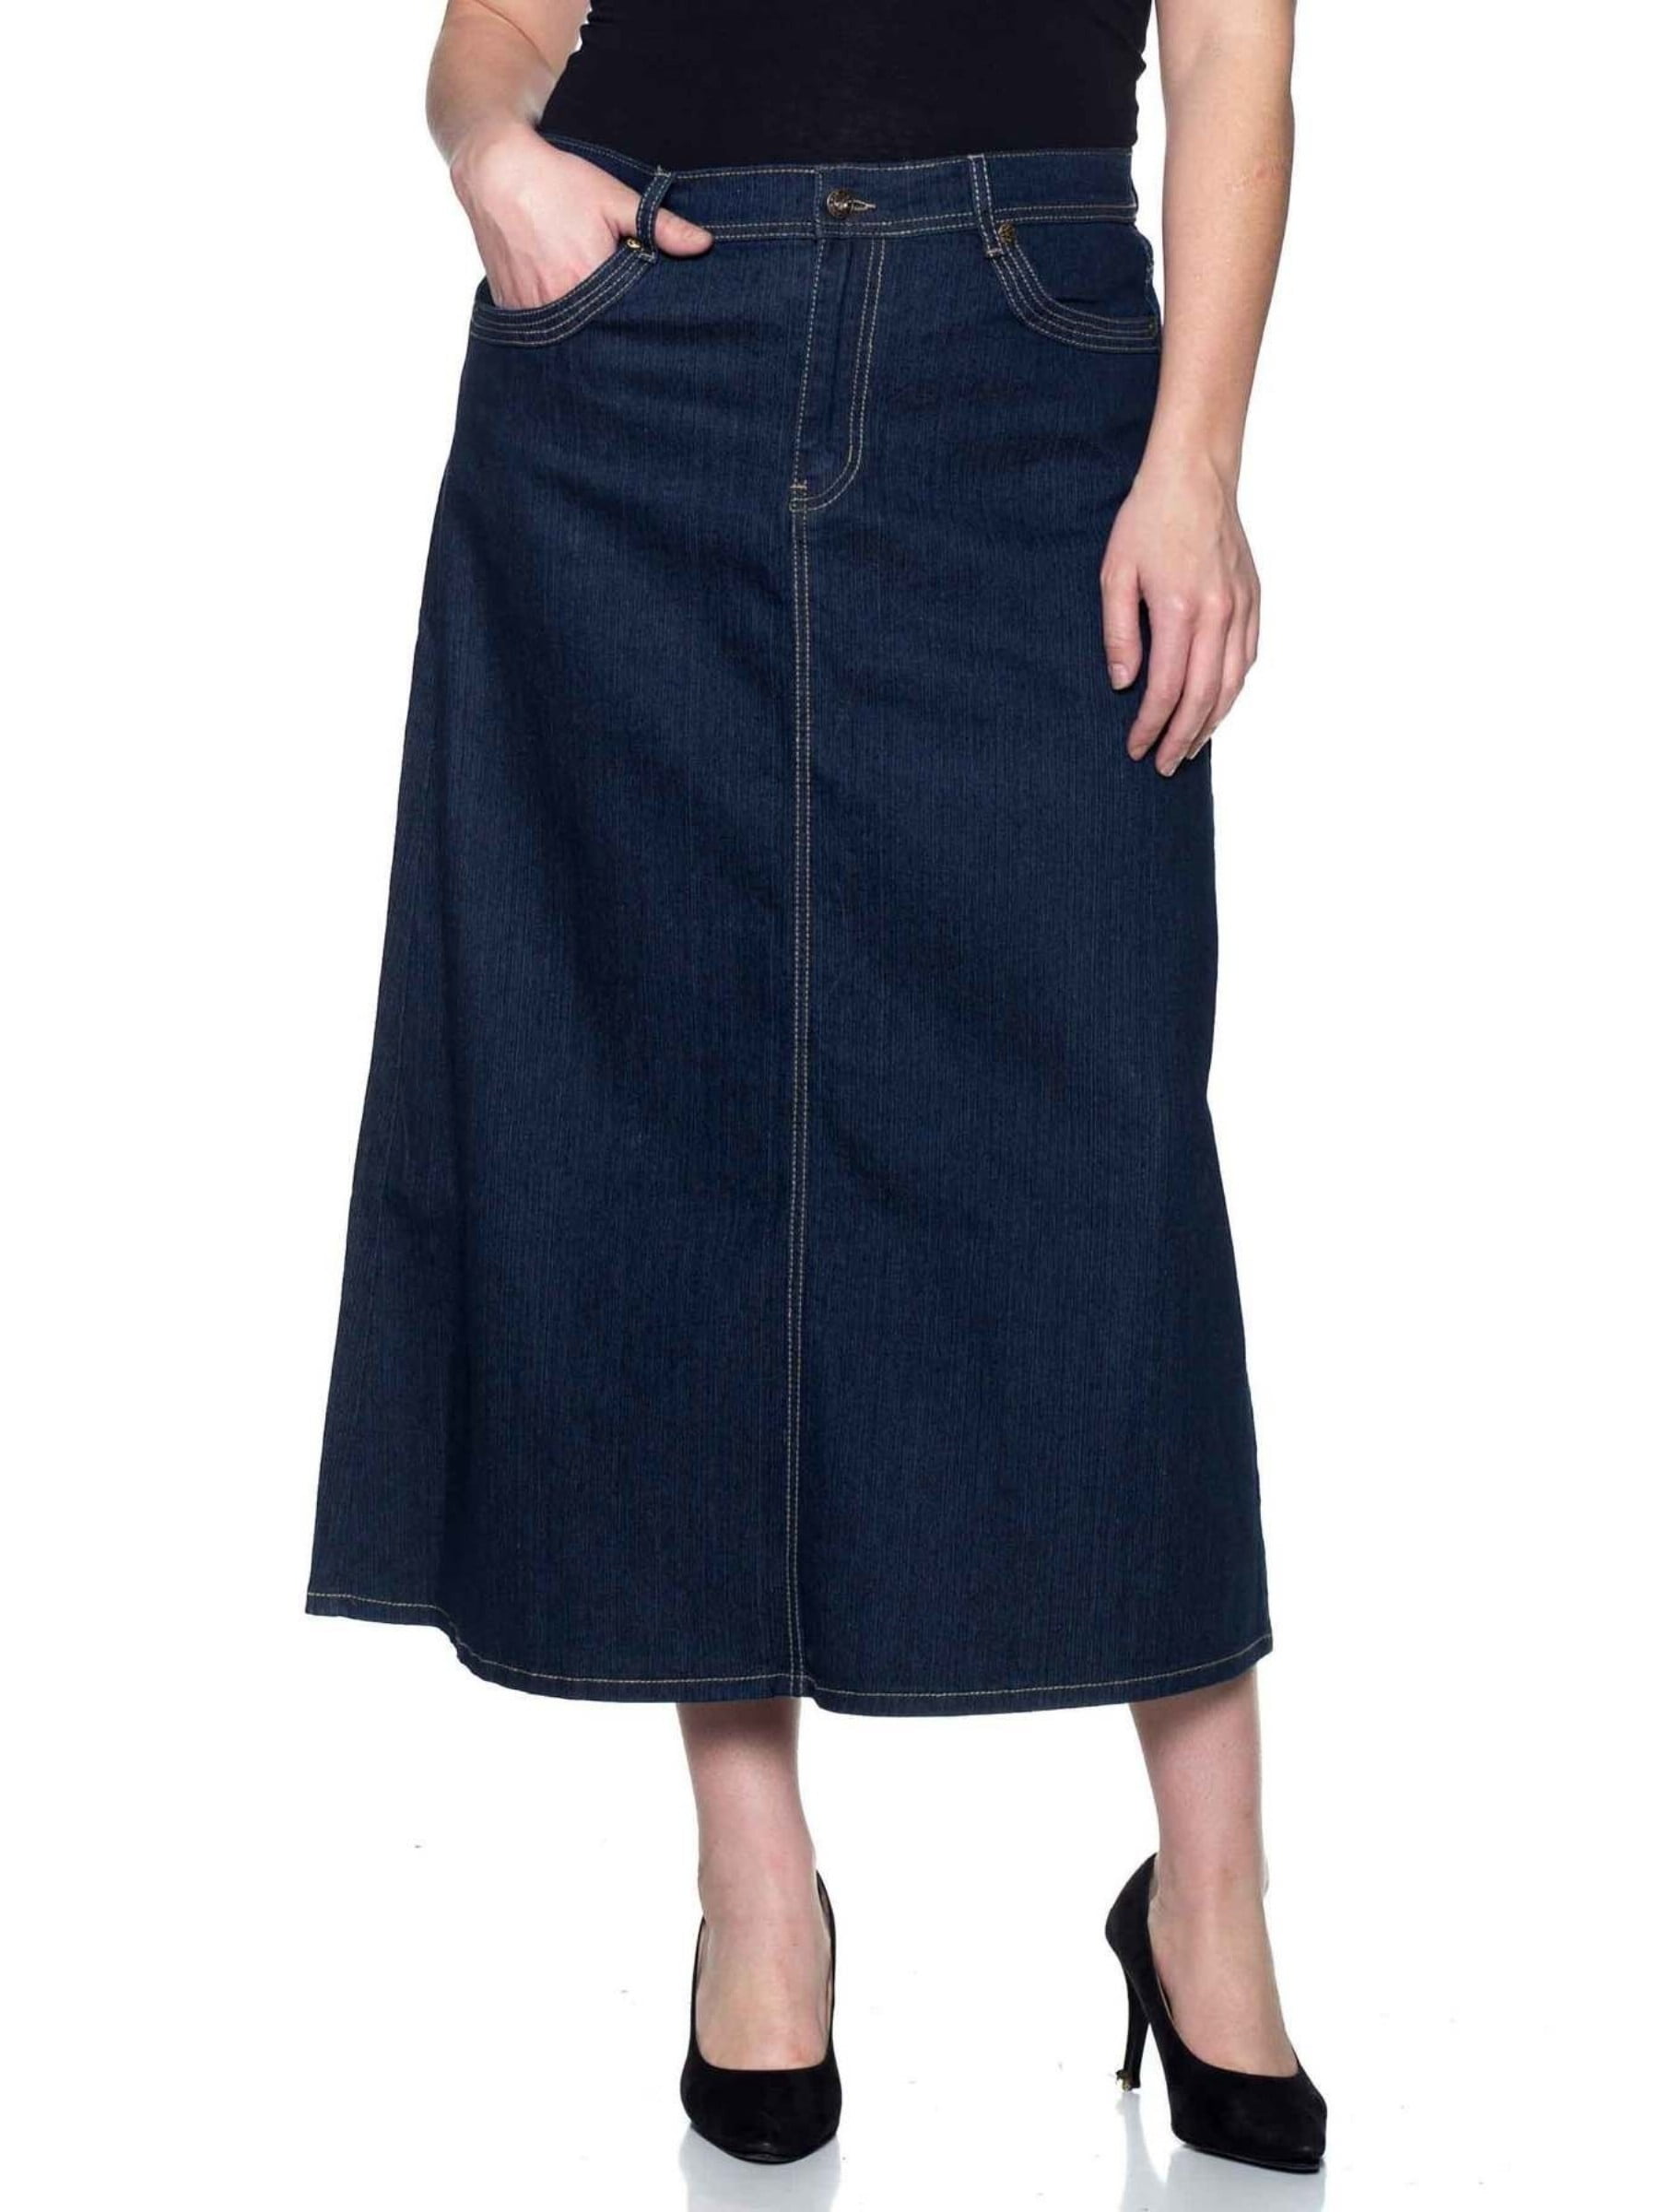 Fashion2love - Women's Plus Size Mid Rise A-Line Long Jeans Maxi Denim ...